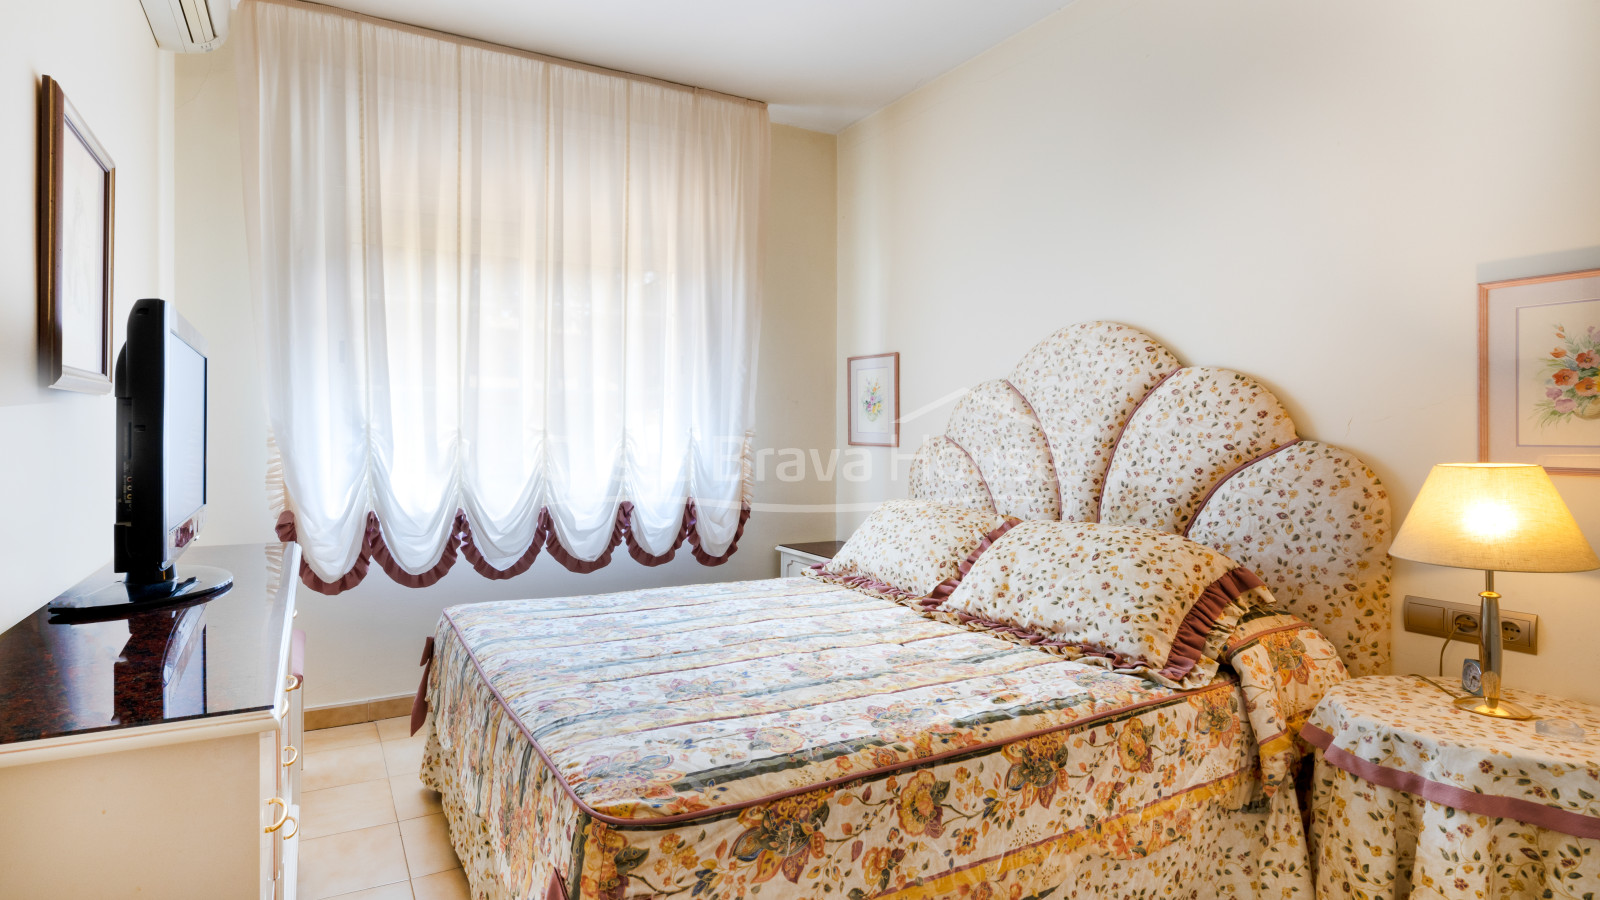 Apartamento con vista mar en venta en Calella Palafrugell, a 250 m de la playa del Port Pelegrí